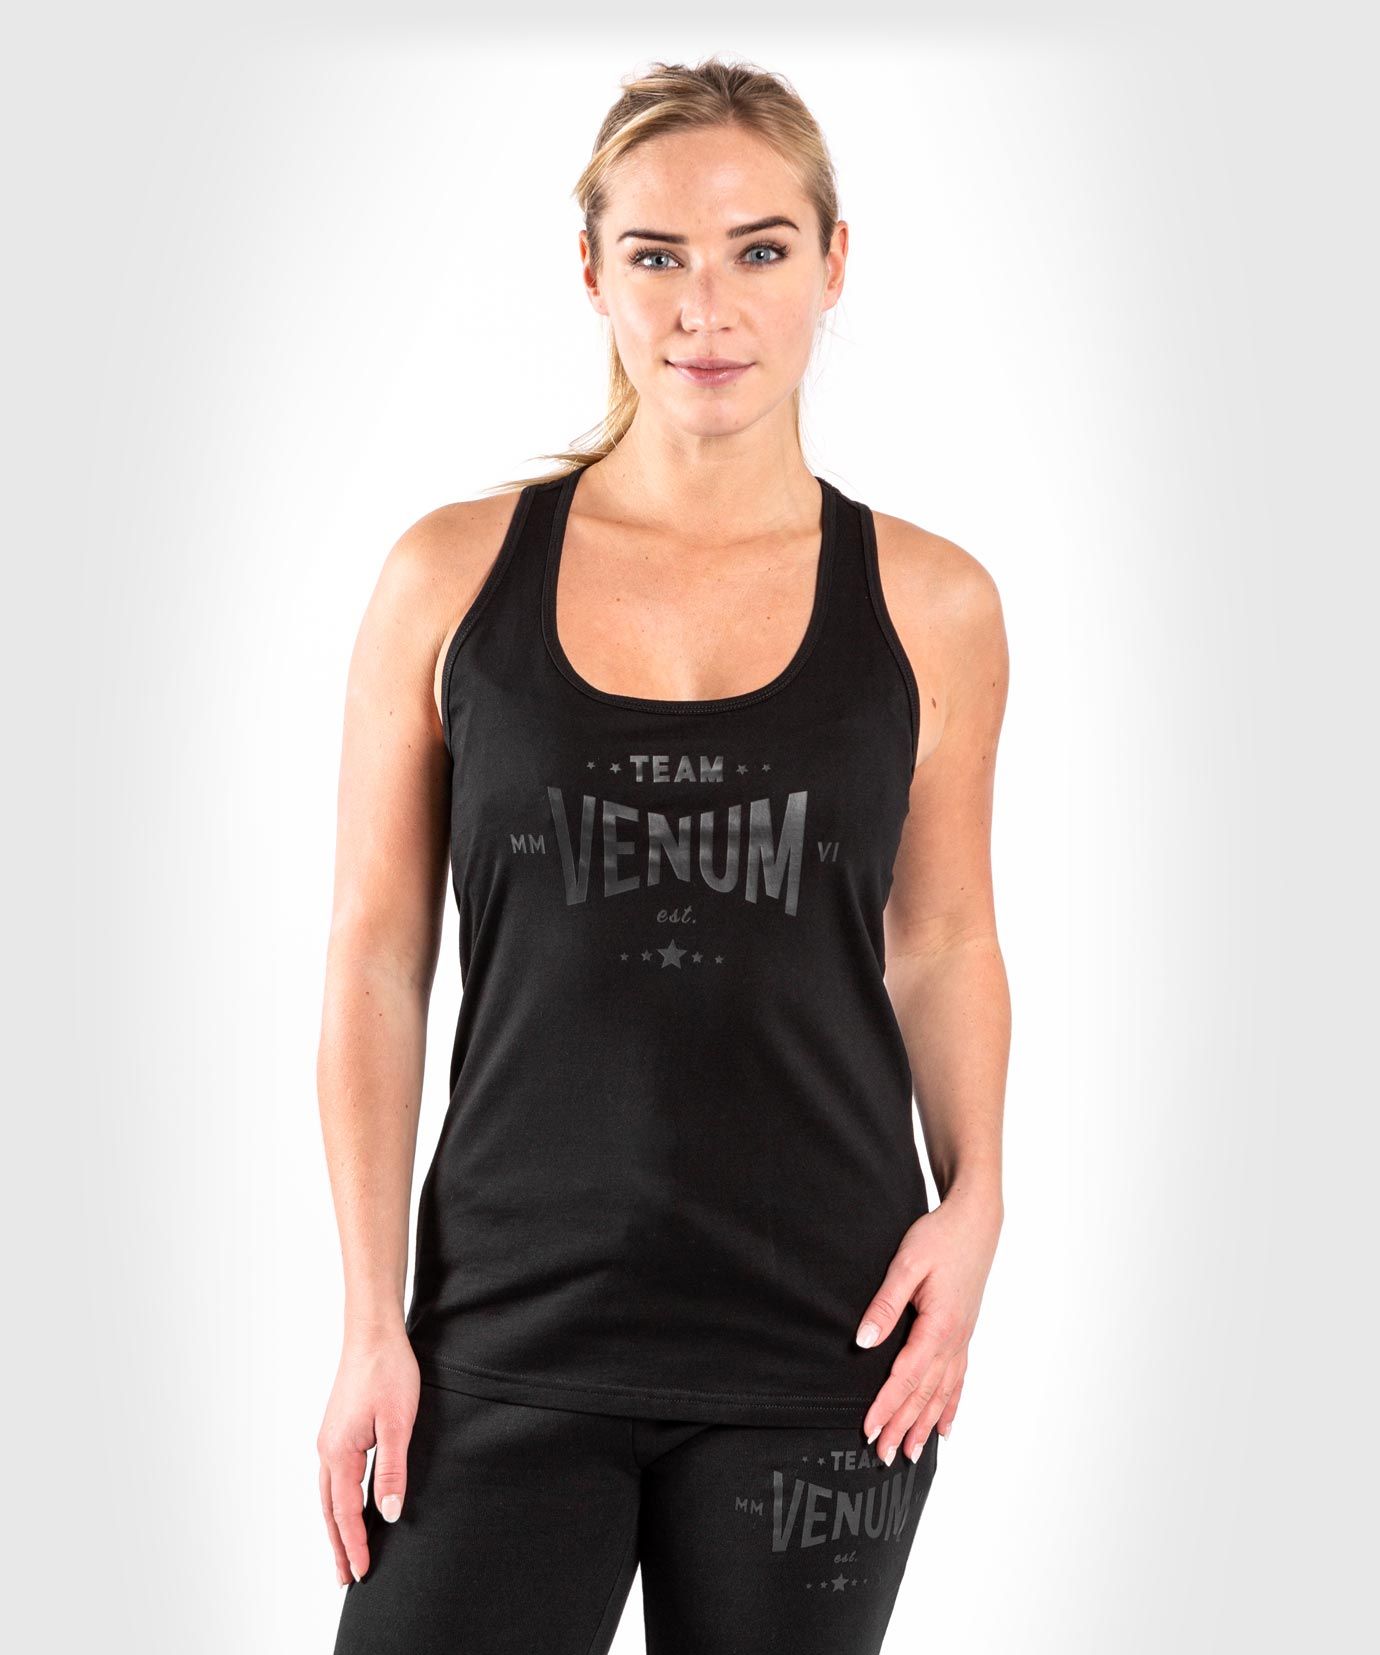 Camiseta de tirantes Venum Team 2.0 - Para mujer - Negra